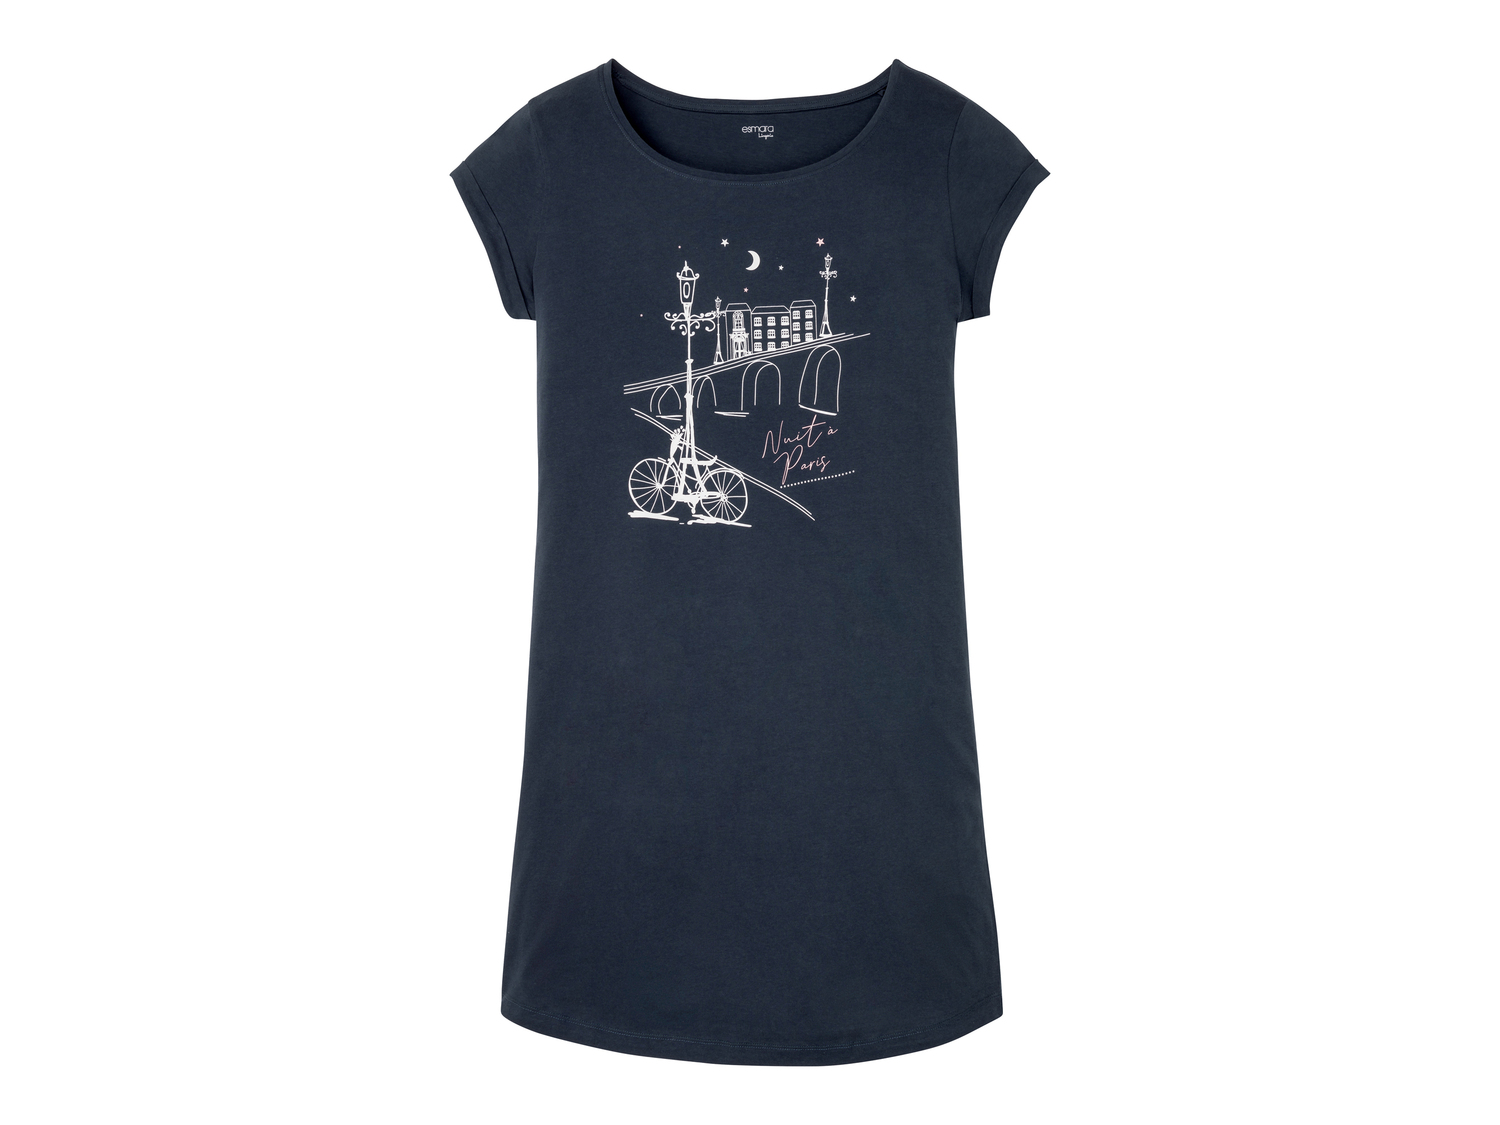 Maxi t-shirt da notte per donna Esmara, prezzo 4.99 &#8364; 
Misure: S-L
Taglie ...